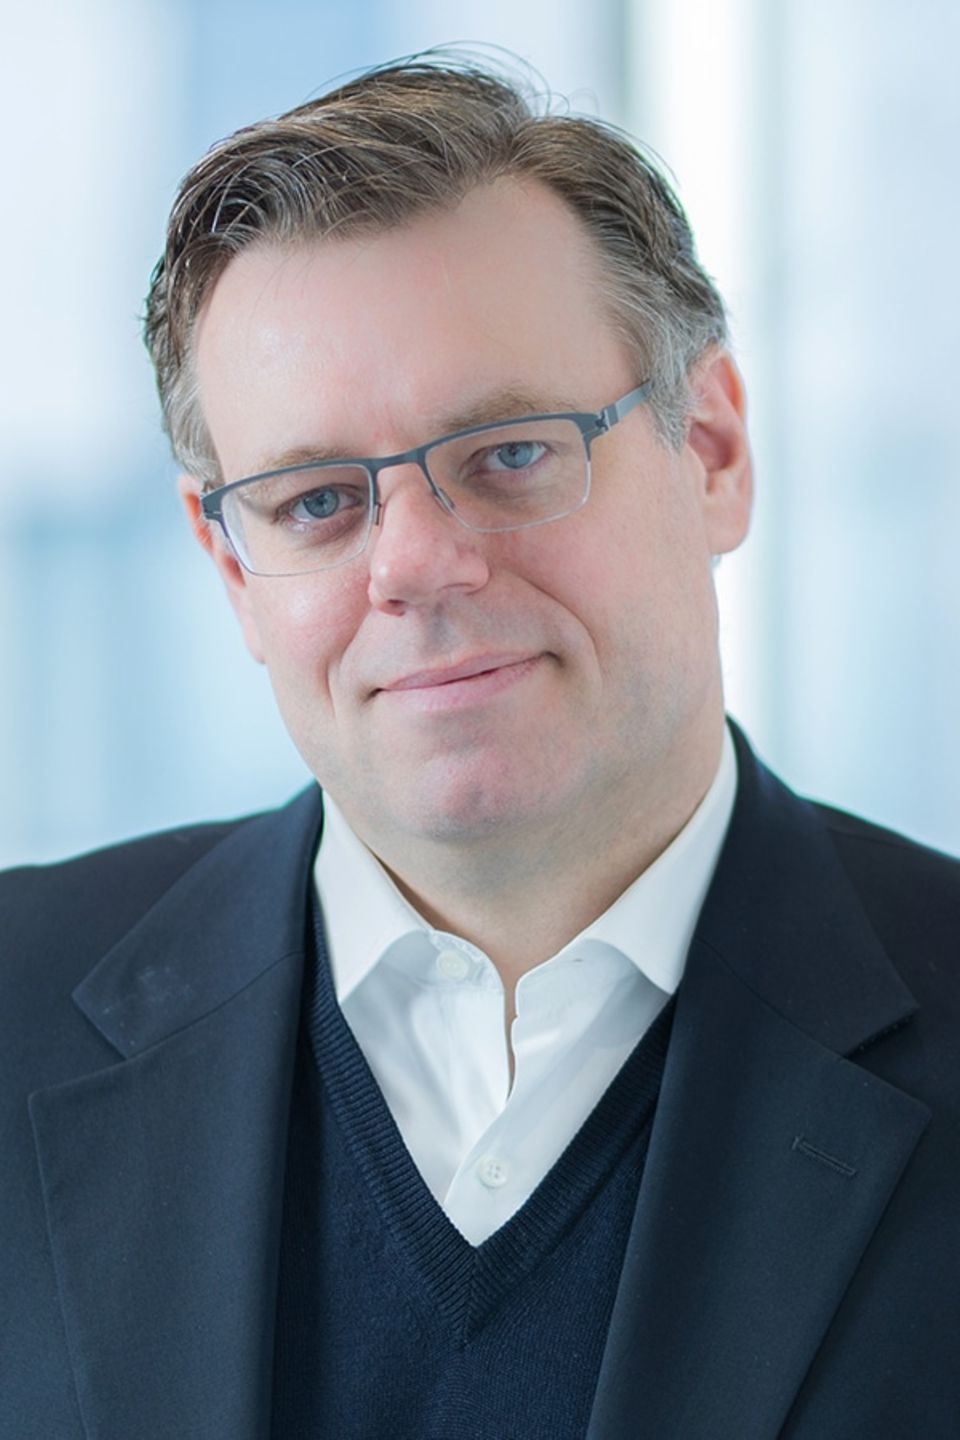 Andreas Billmeier, Europavolkswirt bei Western Asset Management